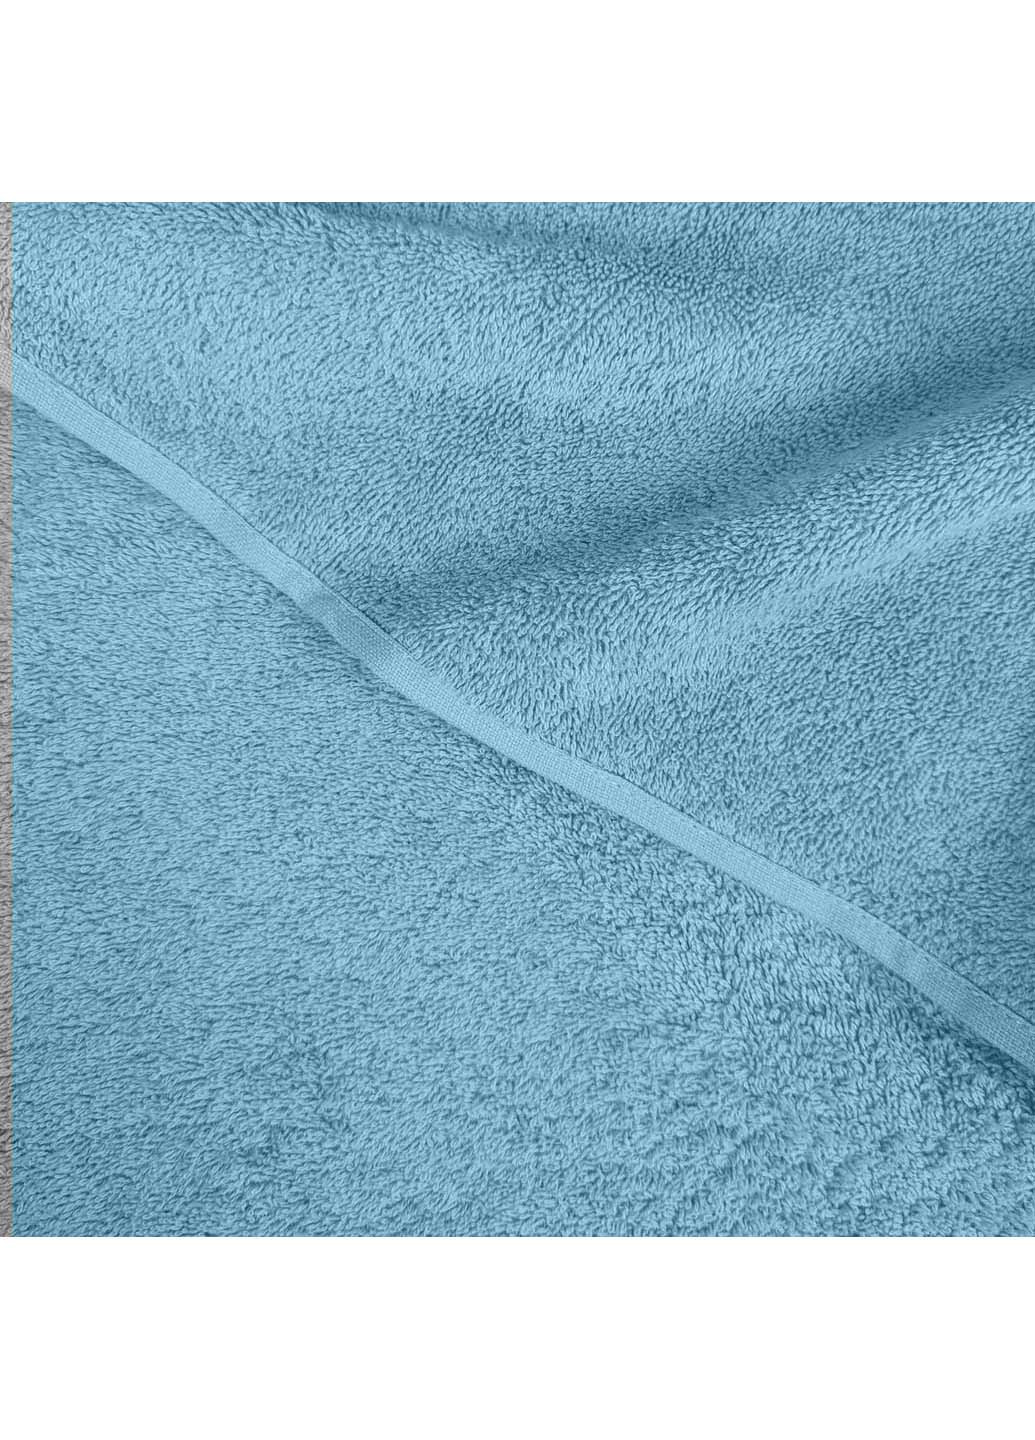 Cosas полотенца махровые olympic 2 шт бирюзовый производство -